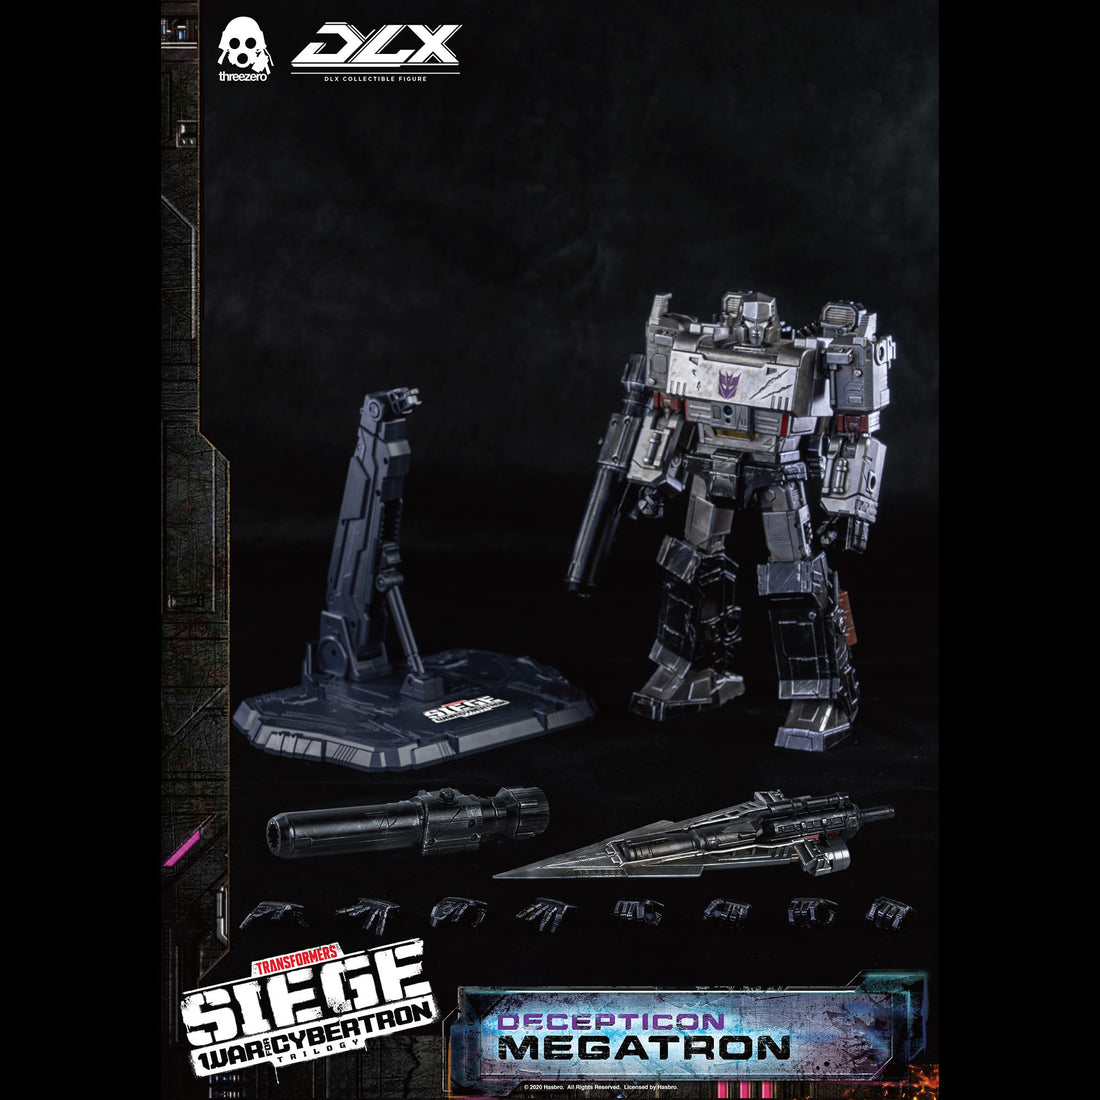 Transformers: War For Cybertron Trilogy  DLX Megatron